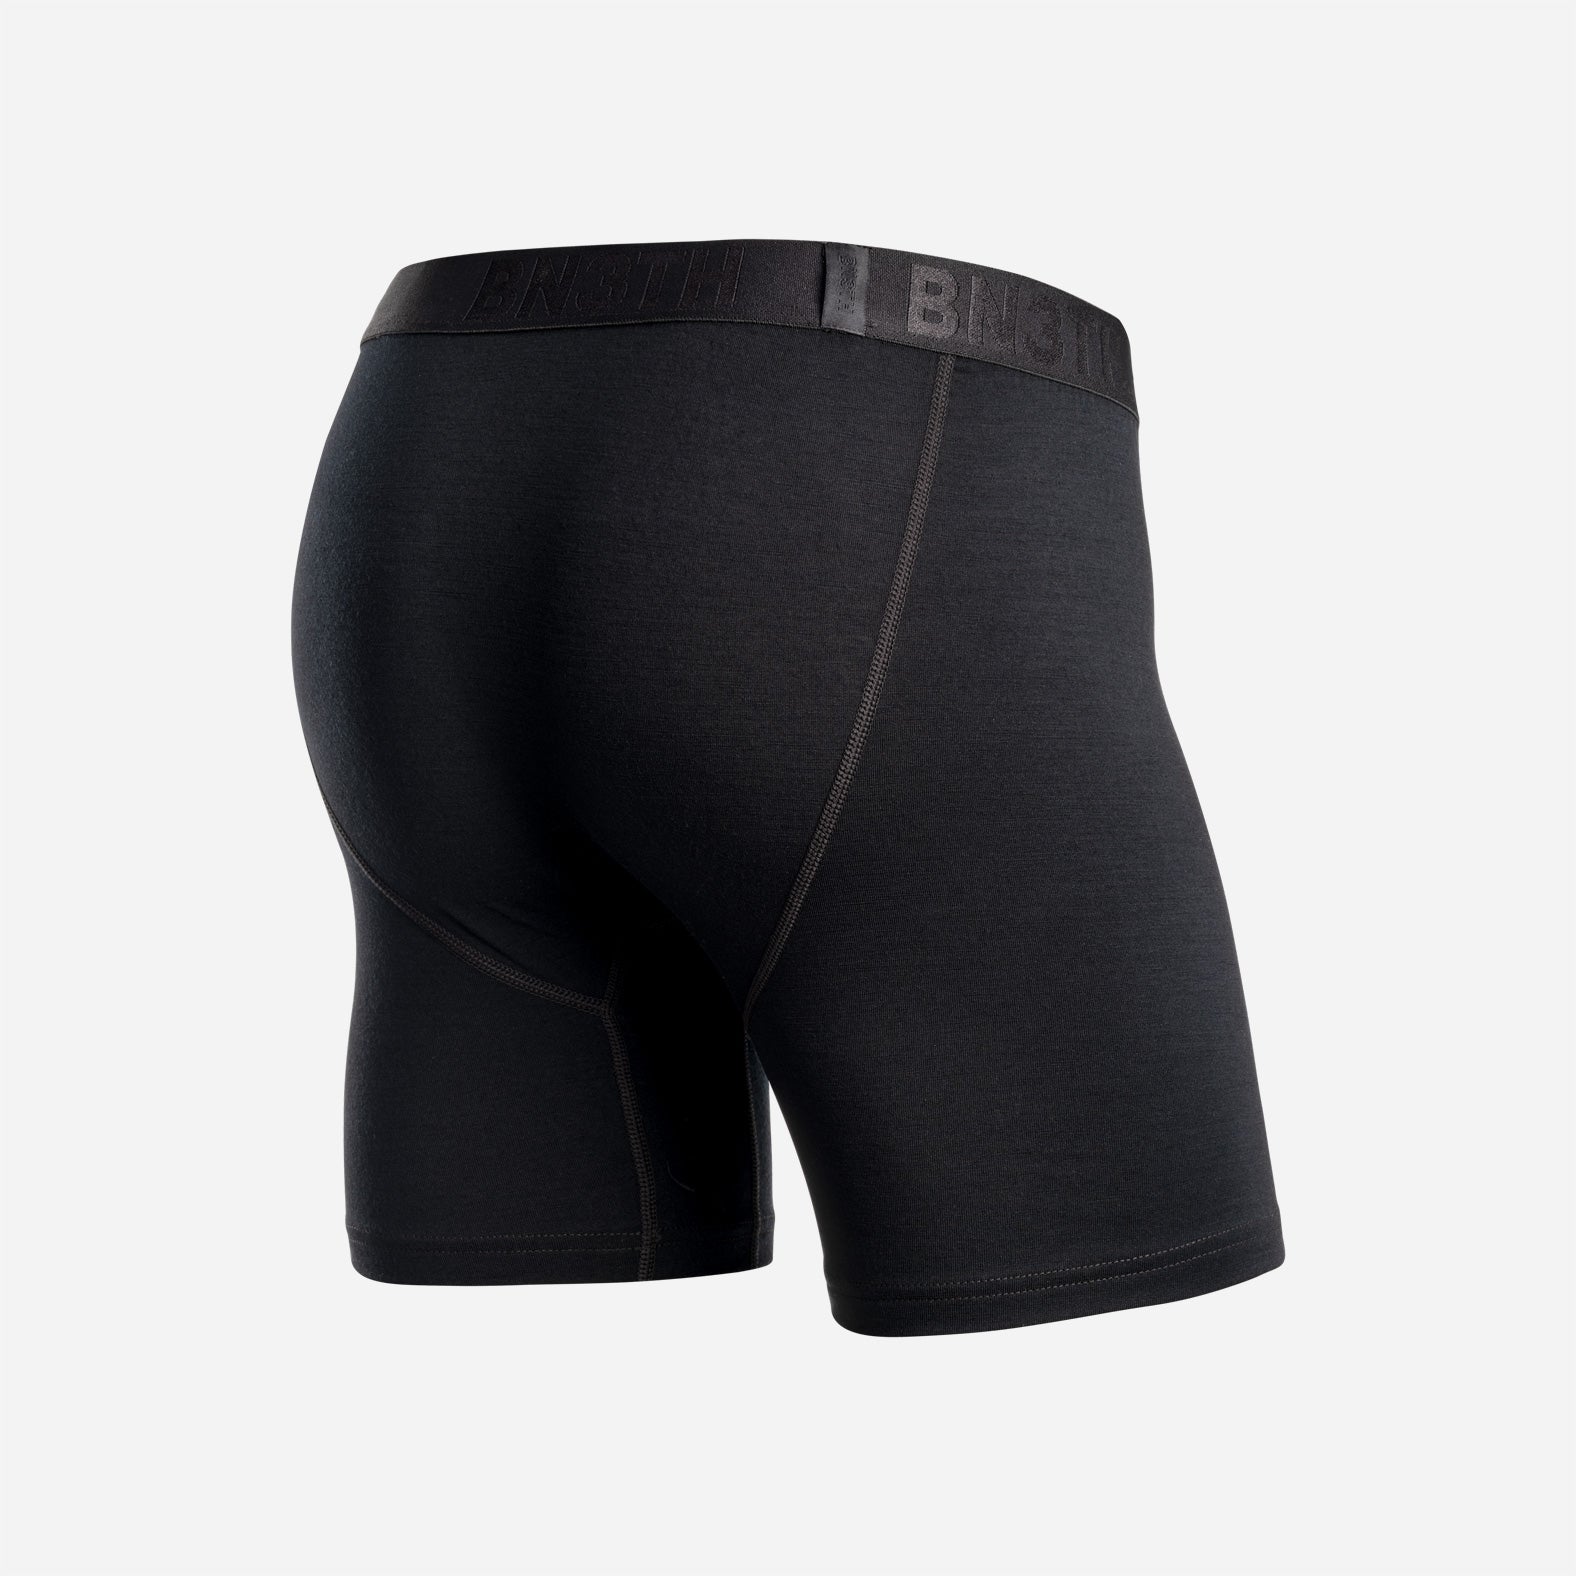 GYM Short Black with Built In Pouch Underwear